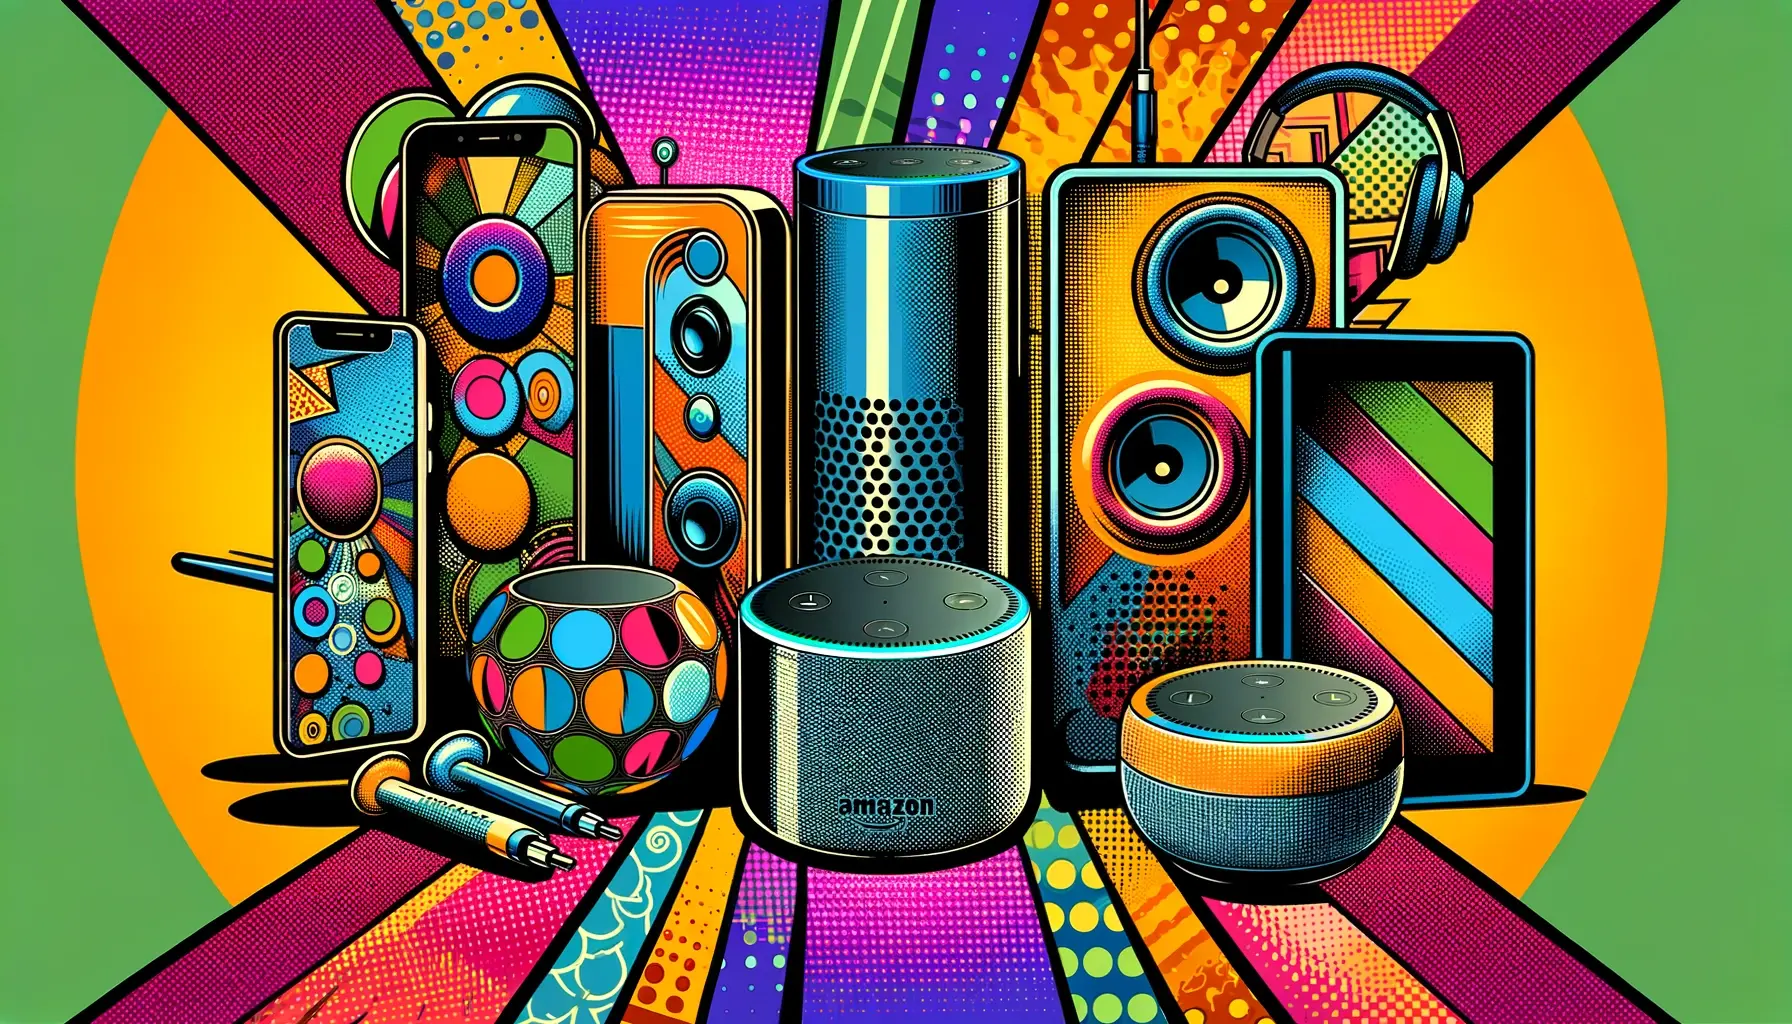 Conjunto de alto-falantes e telefones inteligentes com o logotipo da Amazon